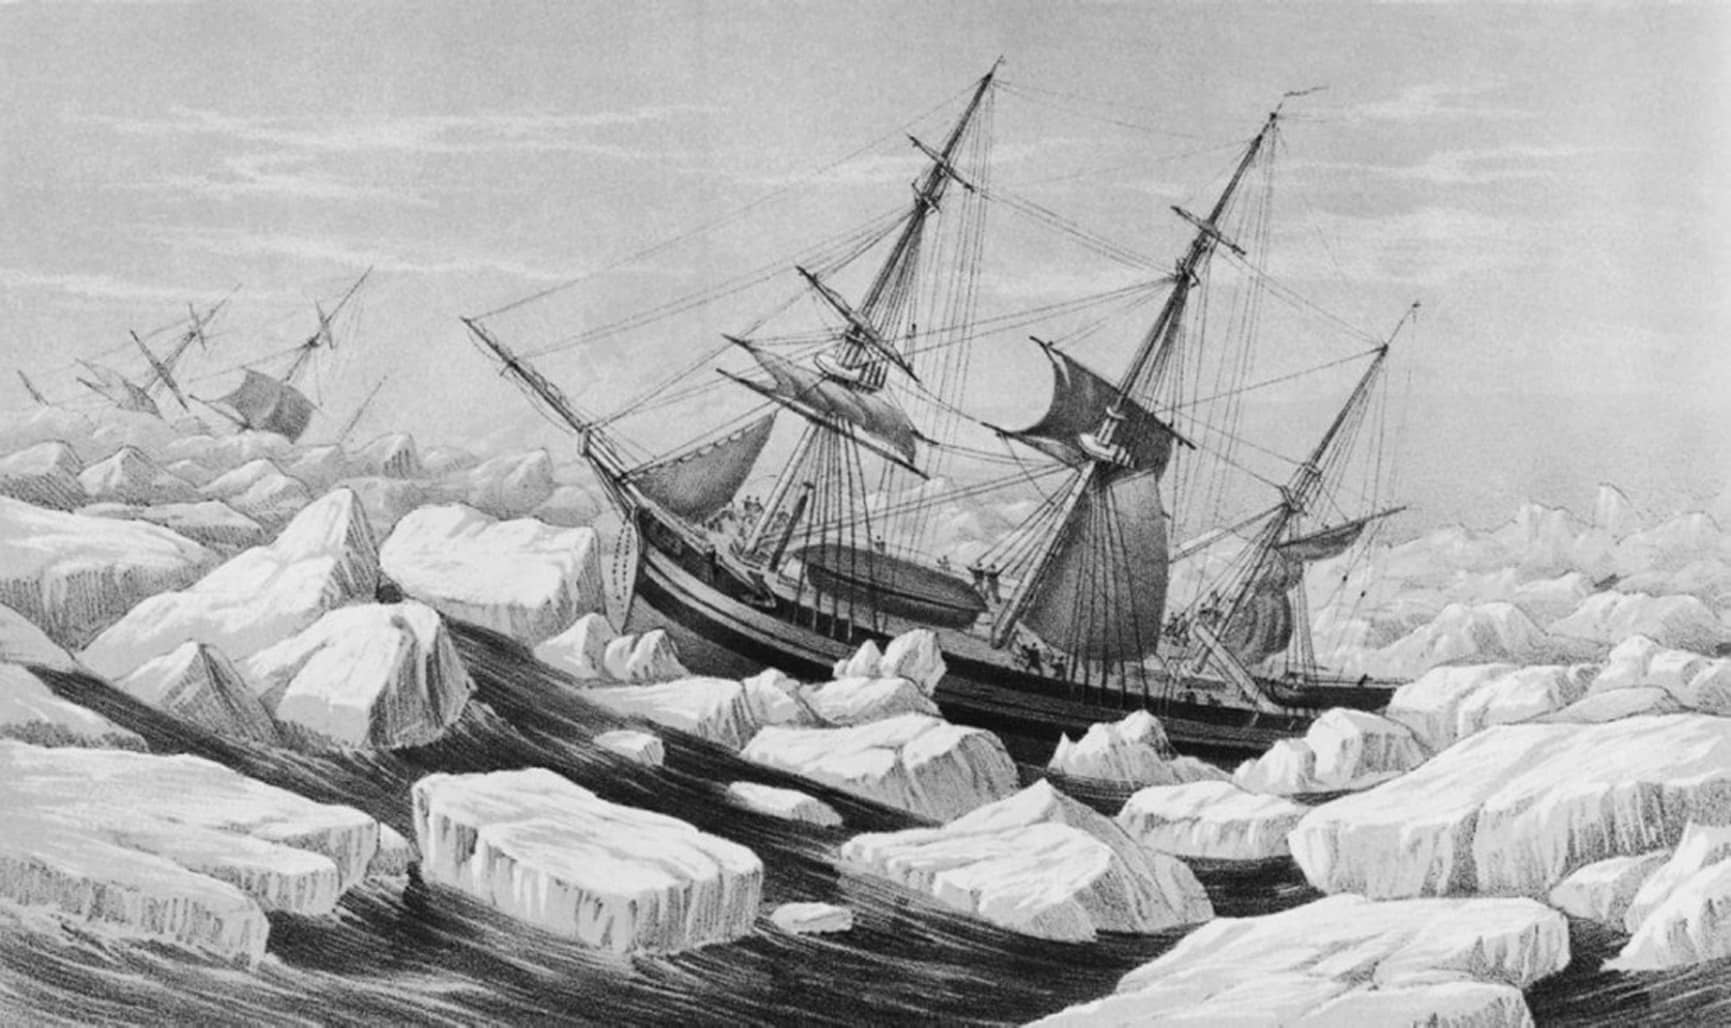 El misterioso ADN extraído de esqueletos de marineros congelados en el Ártico